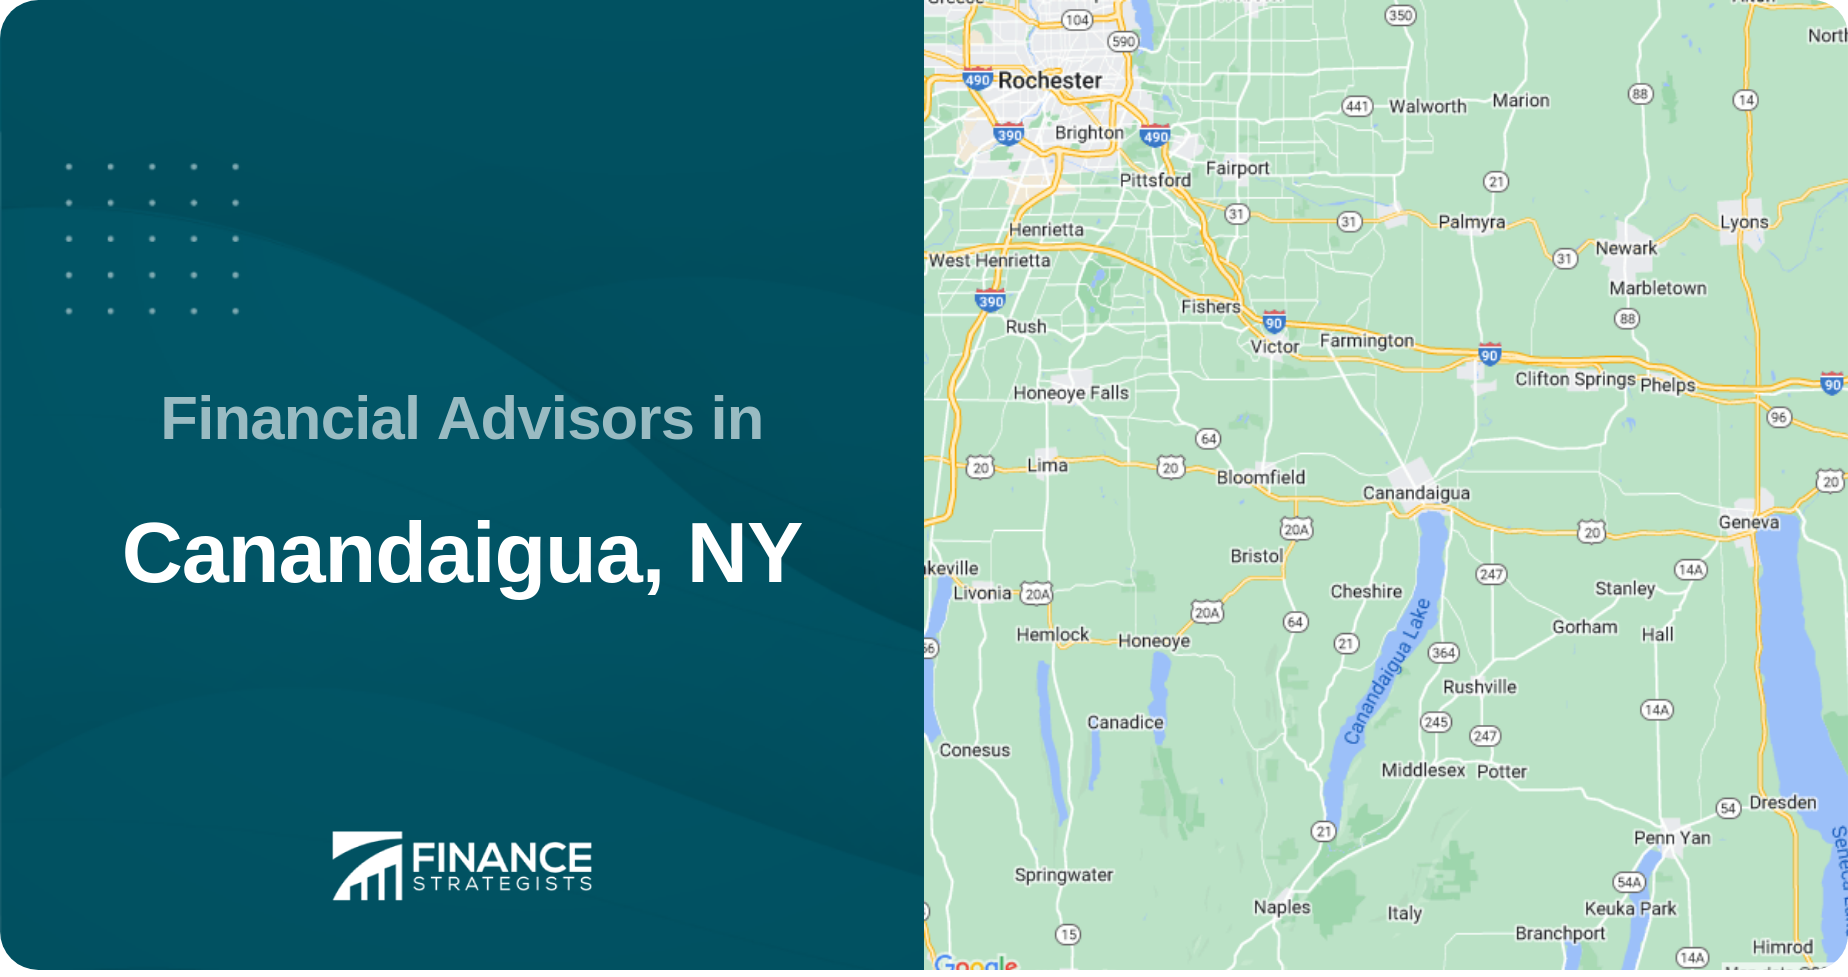 Financial Advisors in Canandaigua, NY